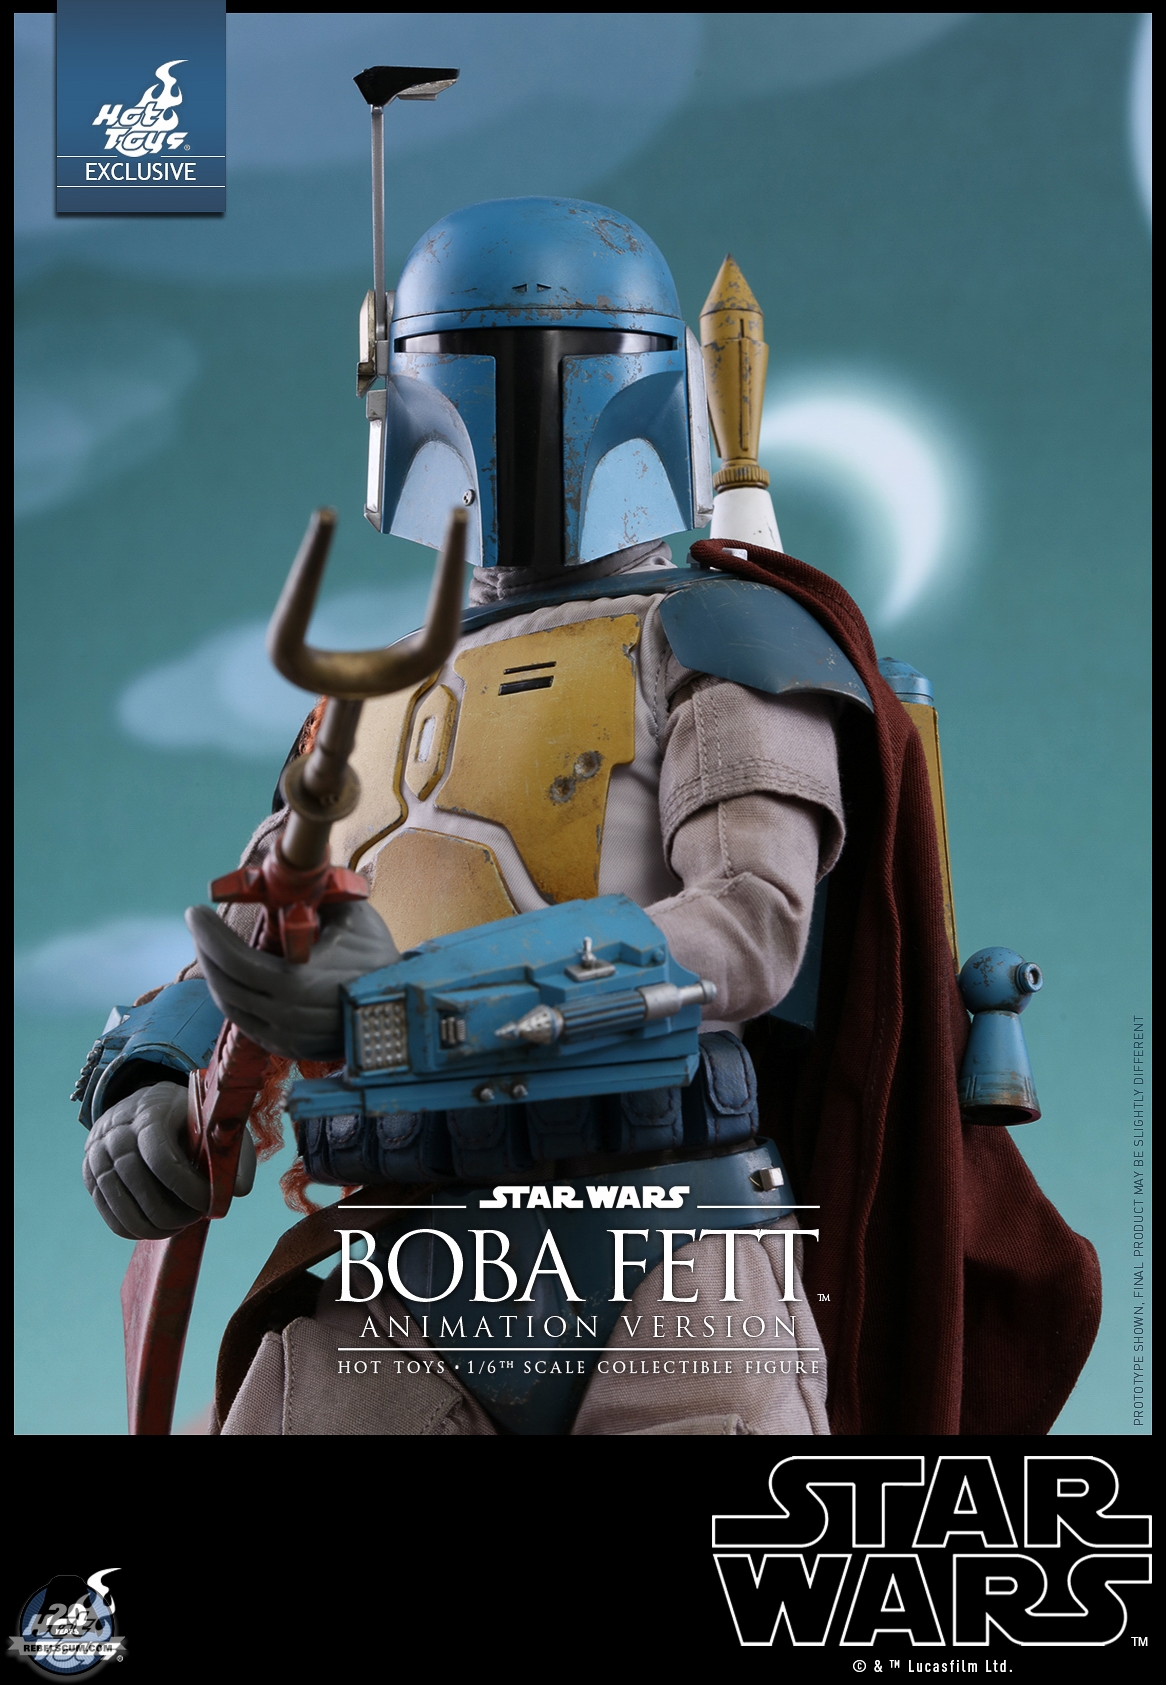 Hot-Toys-TMS006-Star-Wars-Boba-Fett-Animation-Version-009.jpg